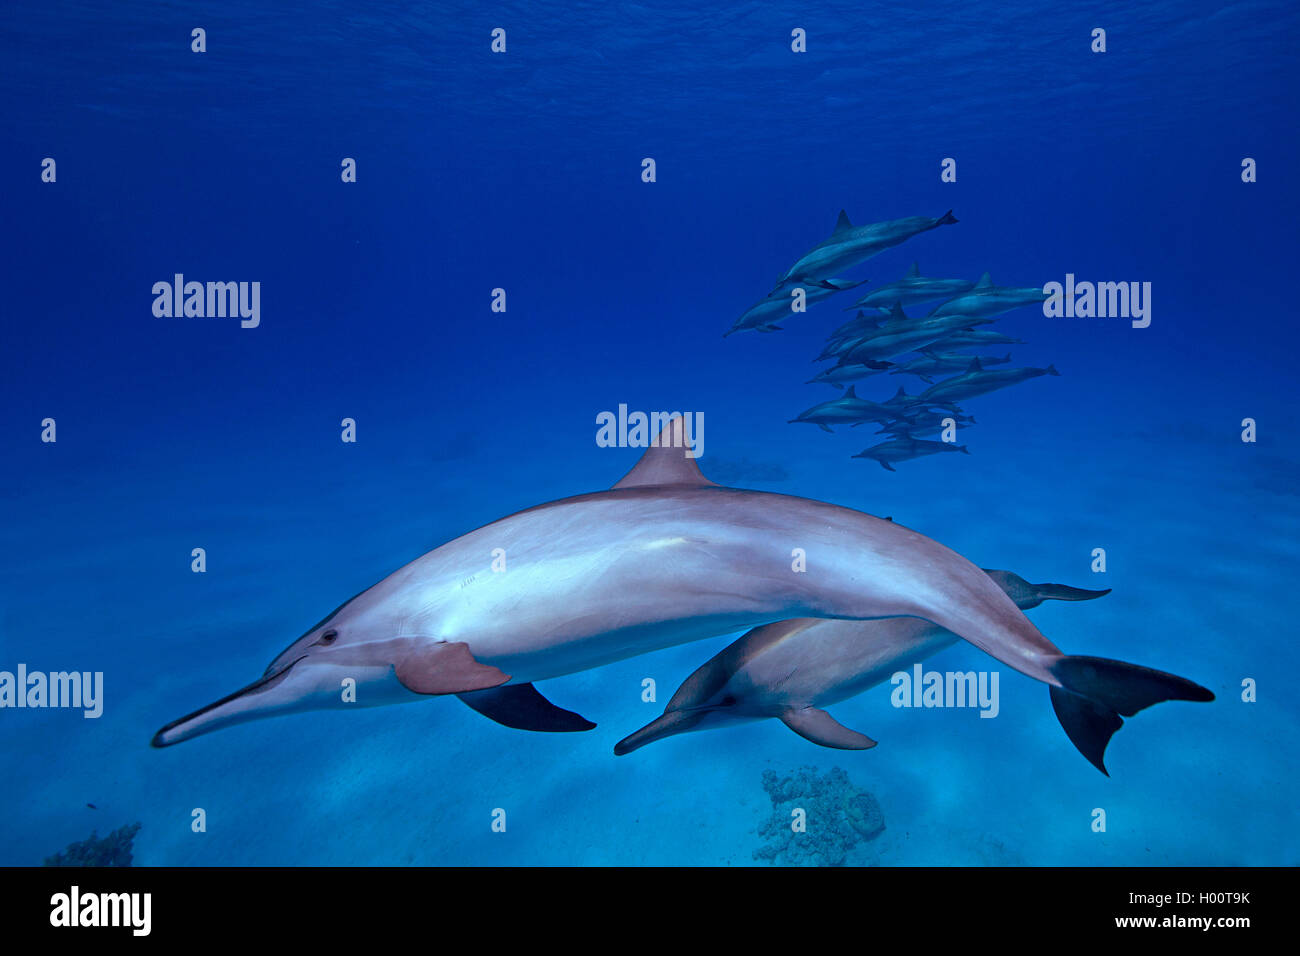 Blau-Weisser Delfin, Blauweisser Delfin, Blau-Weisser Delphin, Blauweisser Delphin, Streifendelfin, Streifendelphin (Stenella co Stock Photo